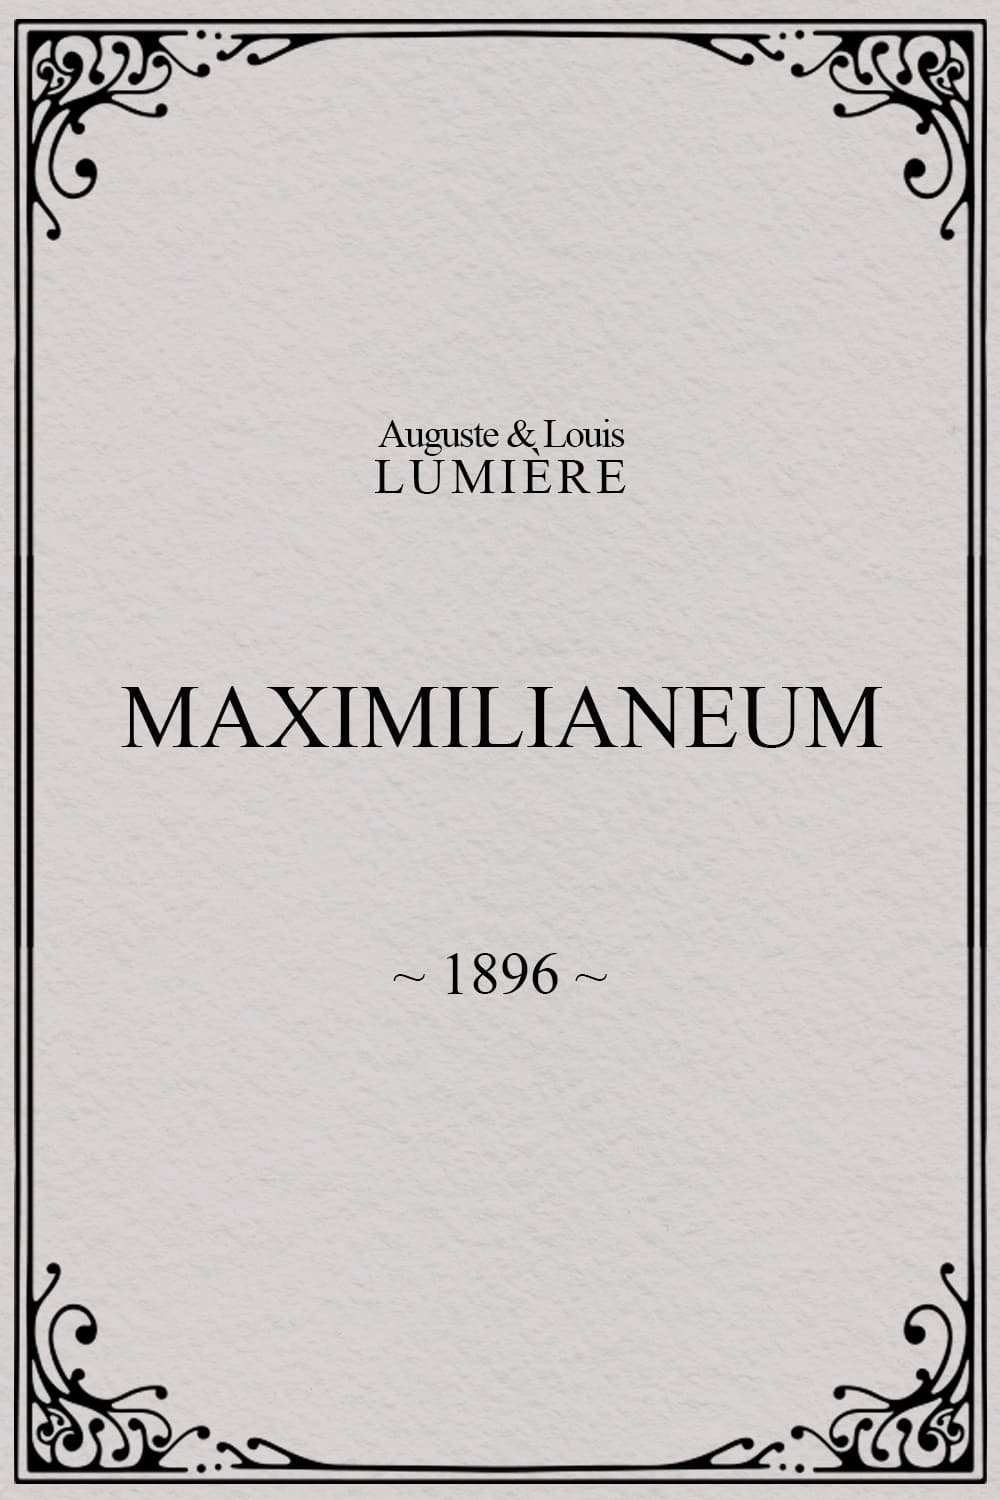 Maximilianeum film